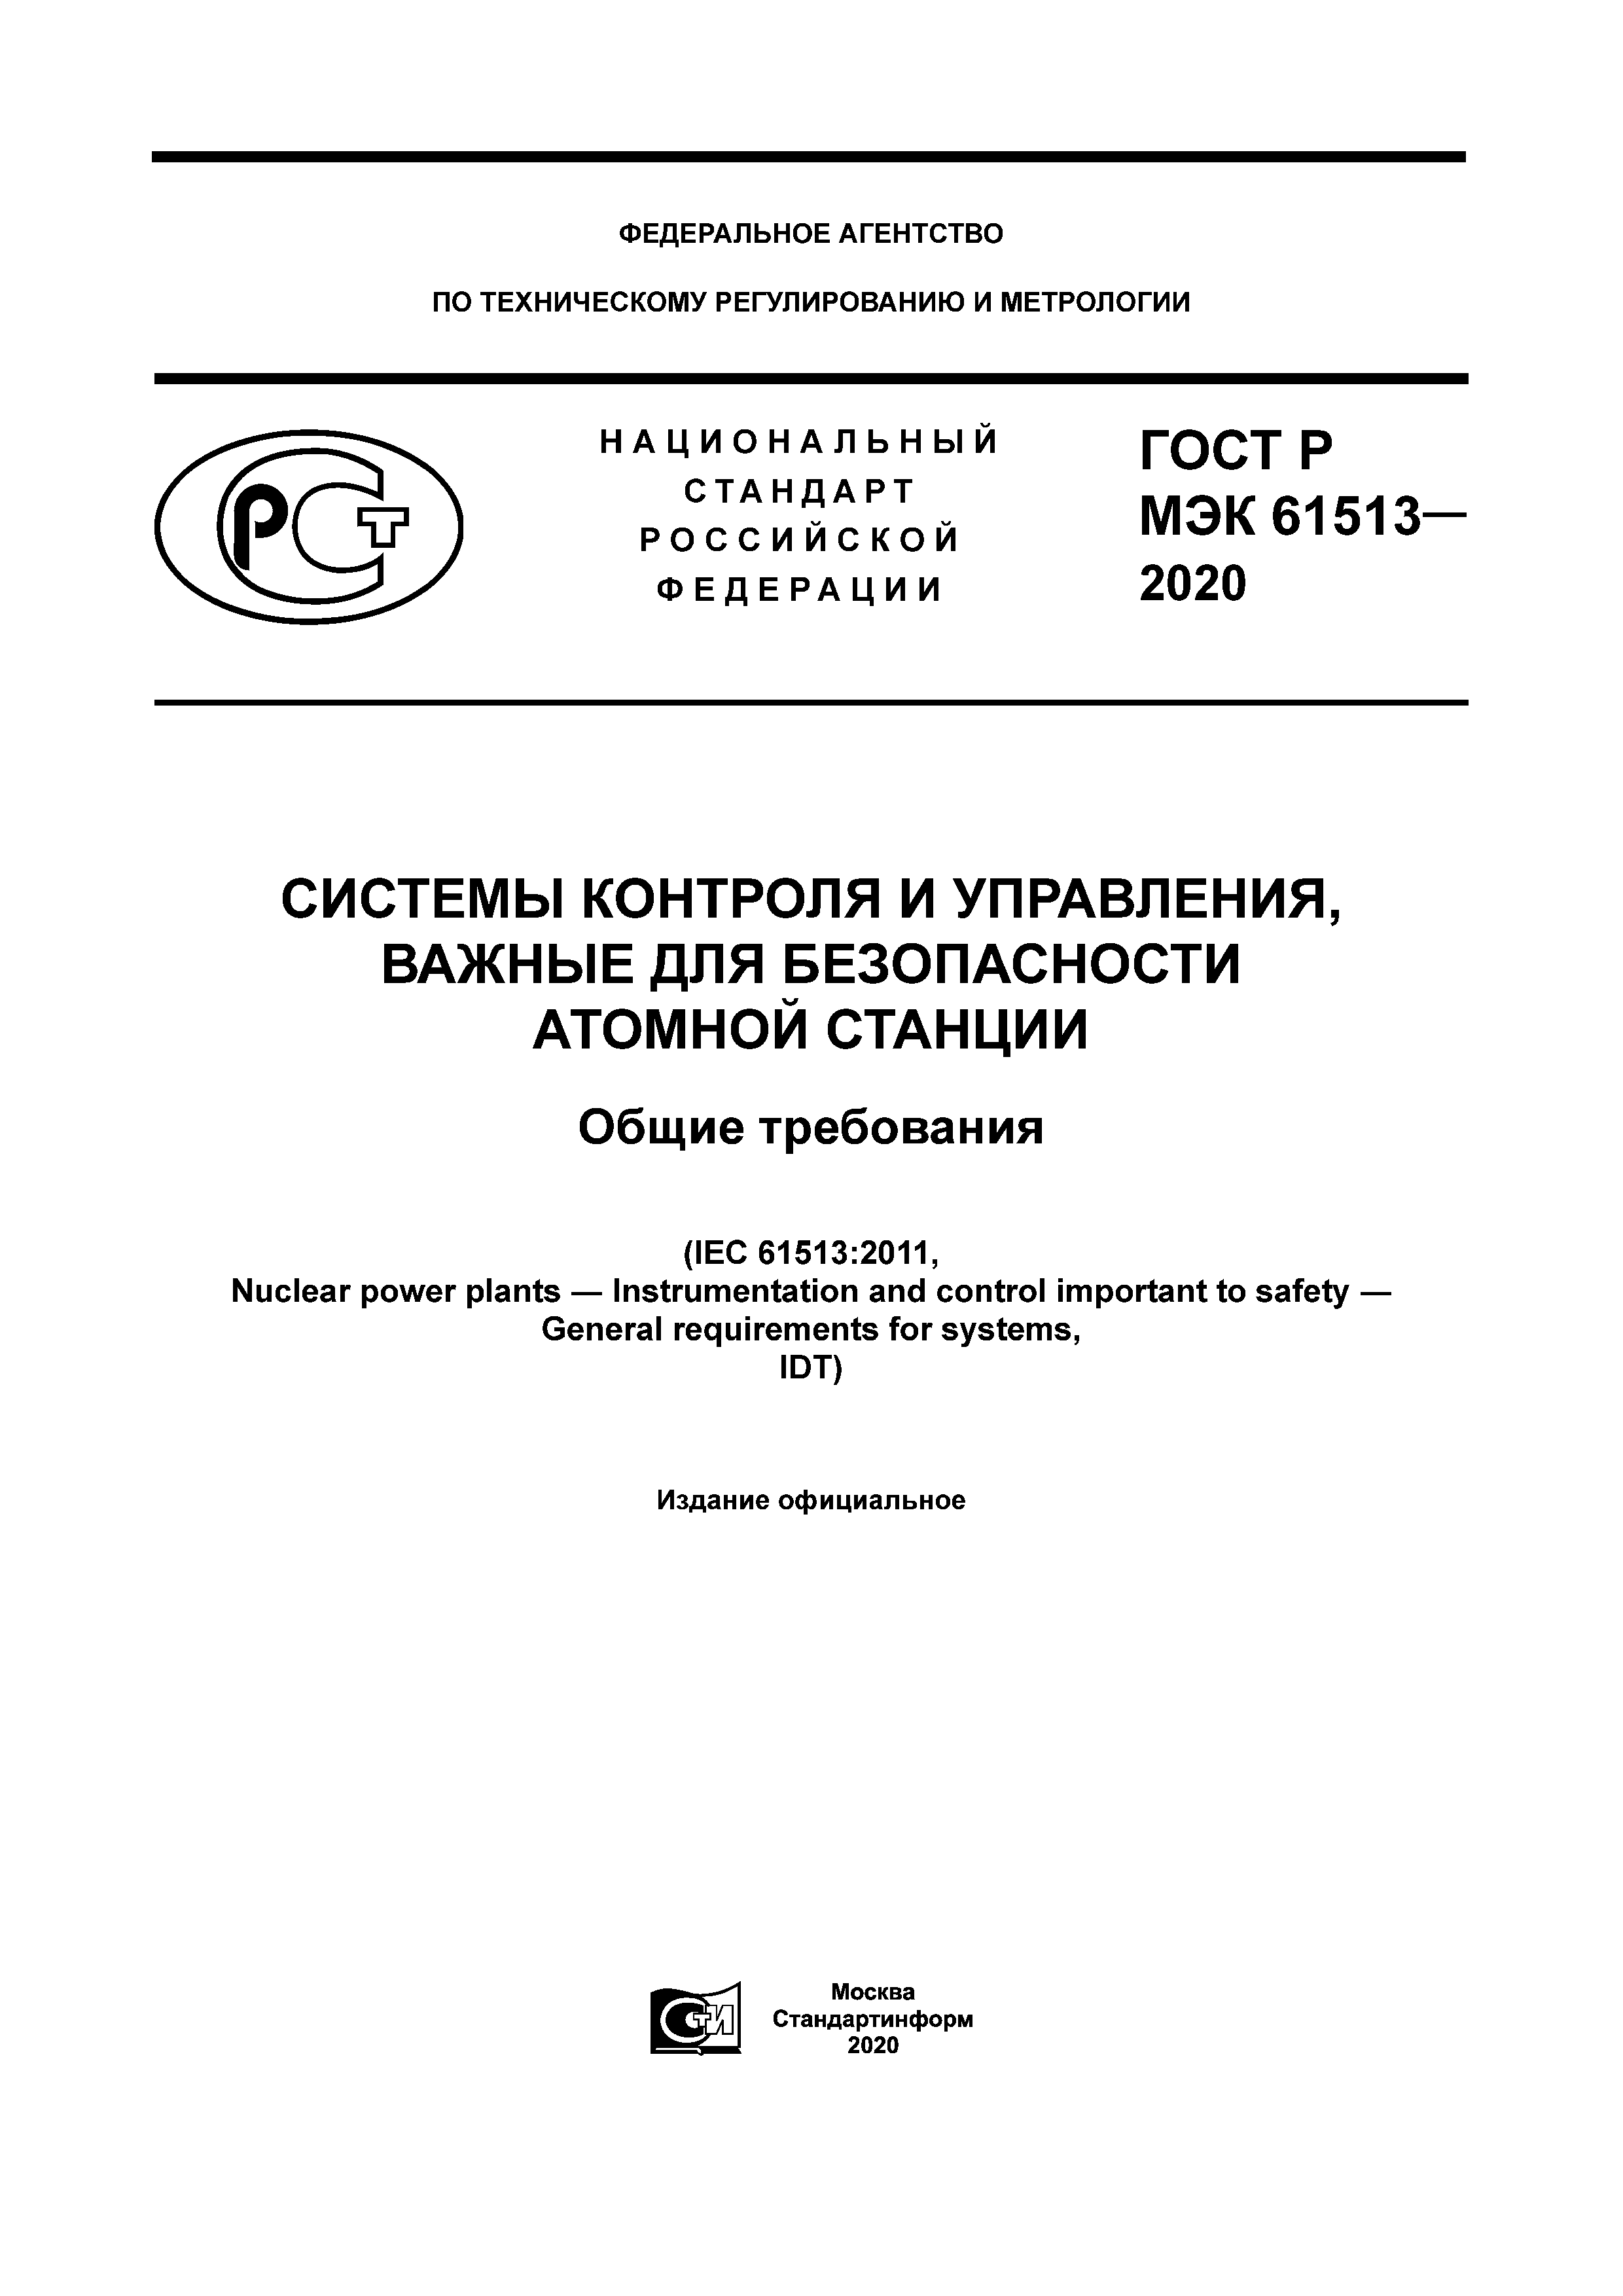 ГОСТ Р МЭК 61513-2020